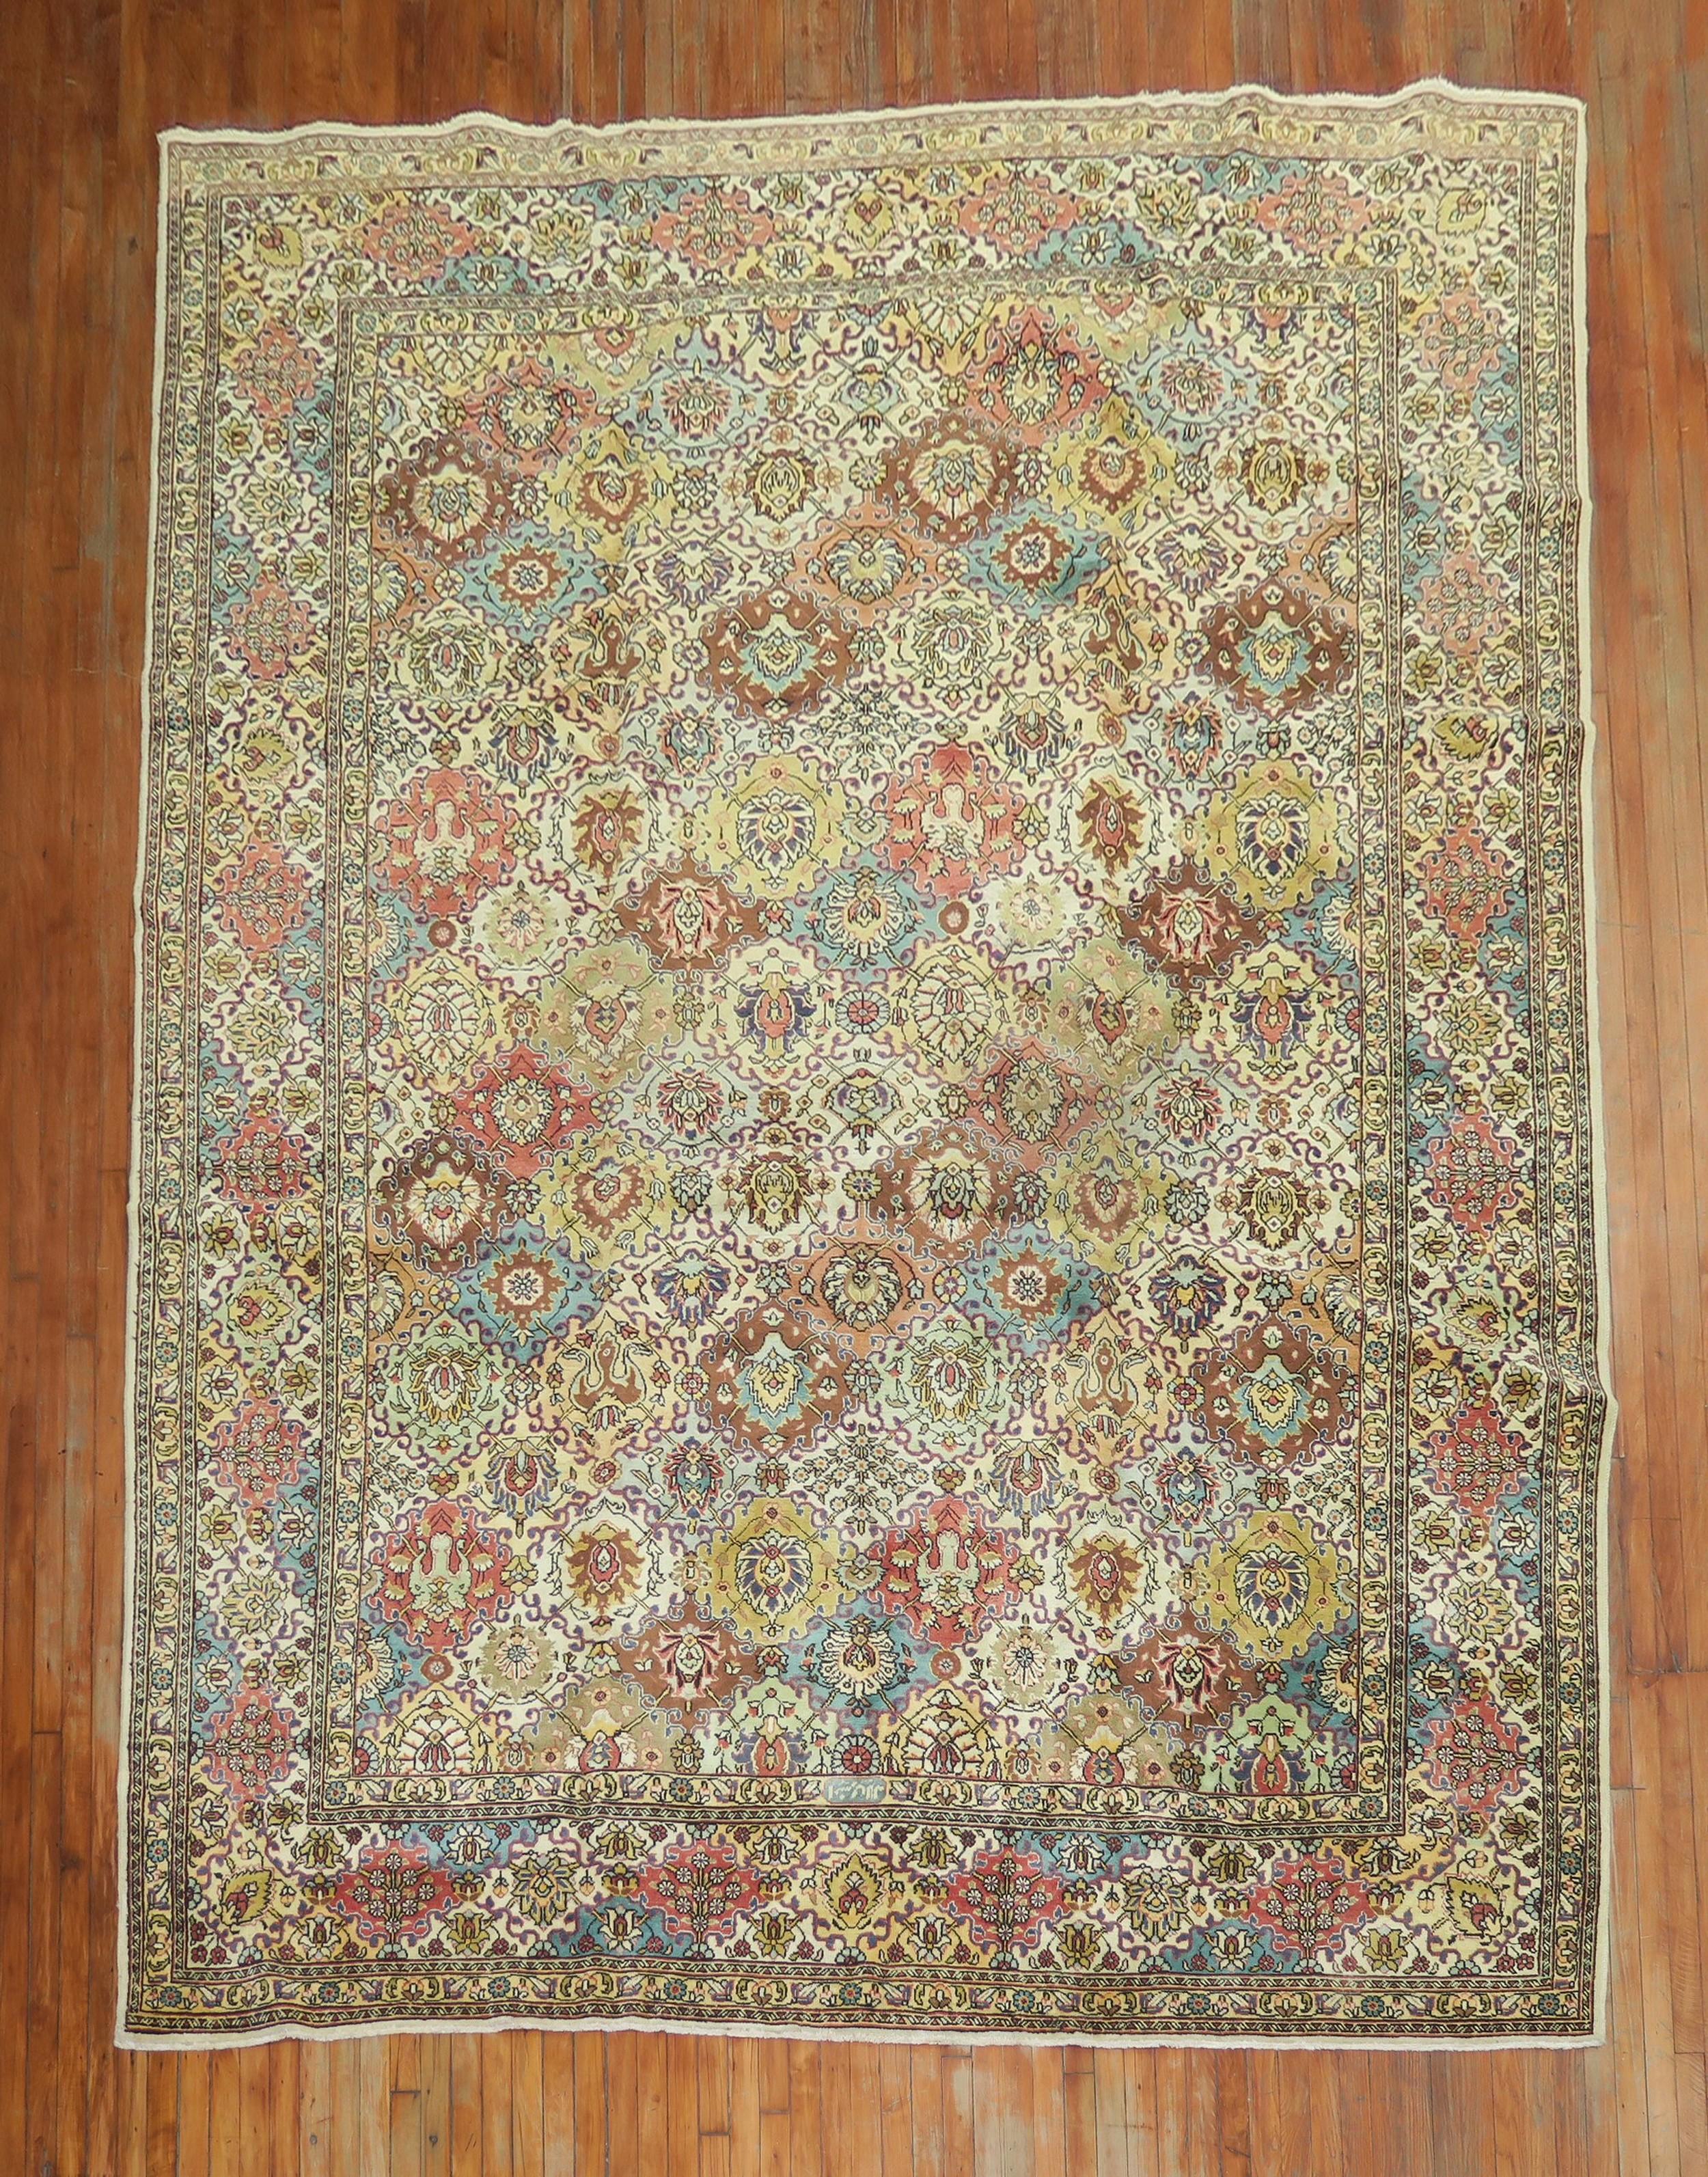 Tapis persan Tabriz du milieu du 20e siècle, avec un motif all-over et un éventail de couleurs sur un champ jaune crème.

Mesures : 9'6'' x 13'.